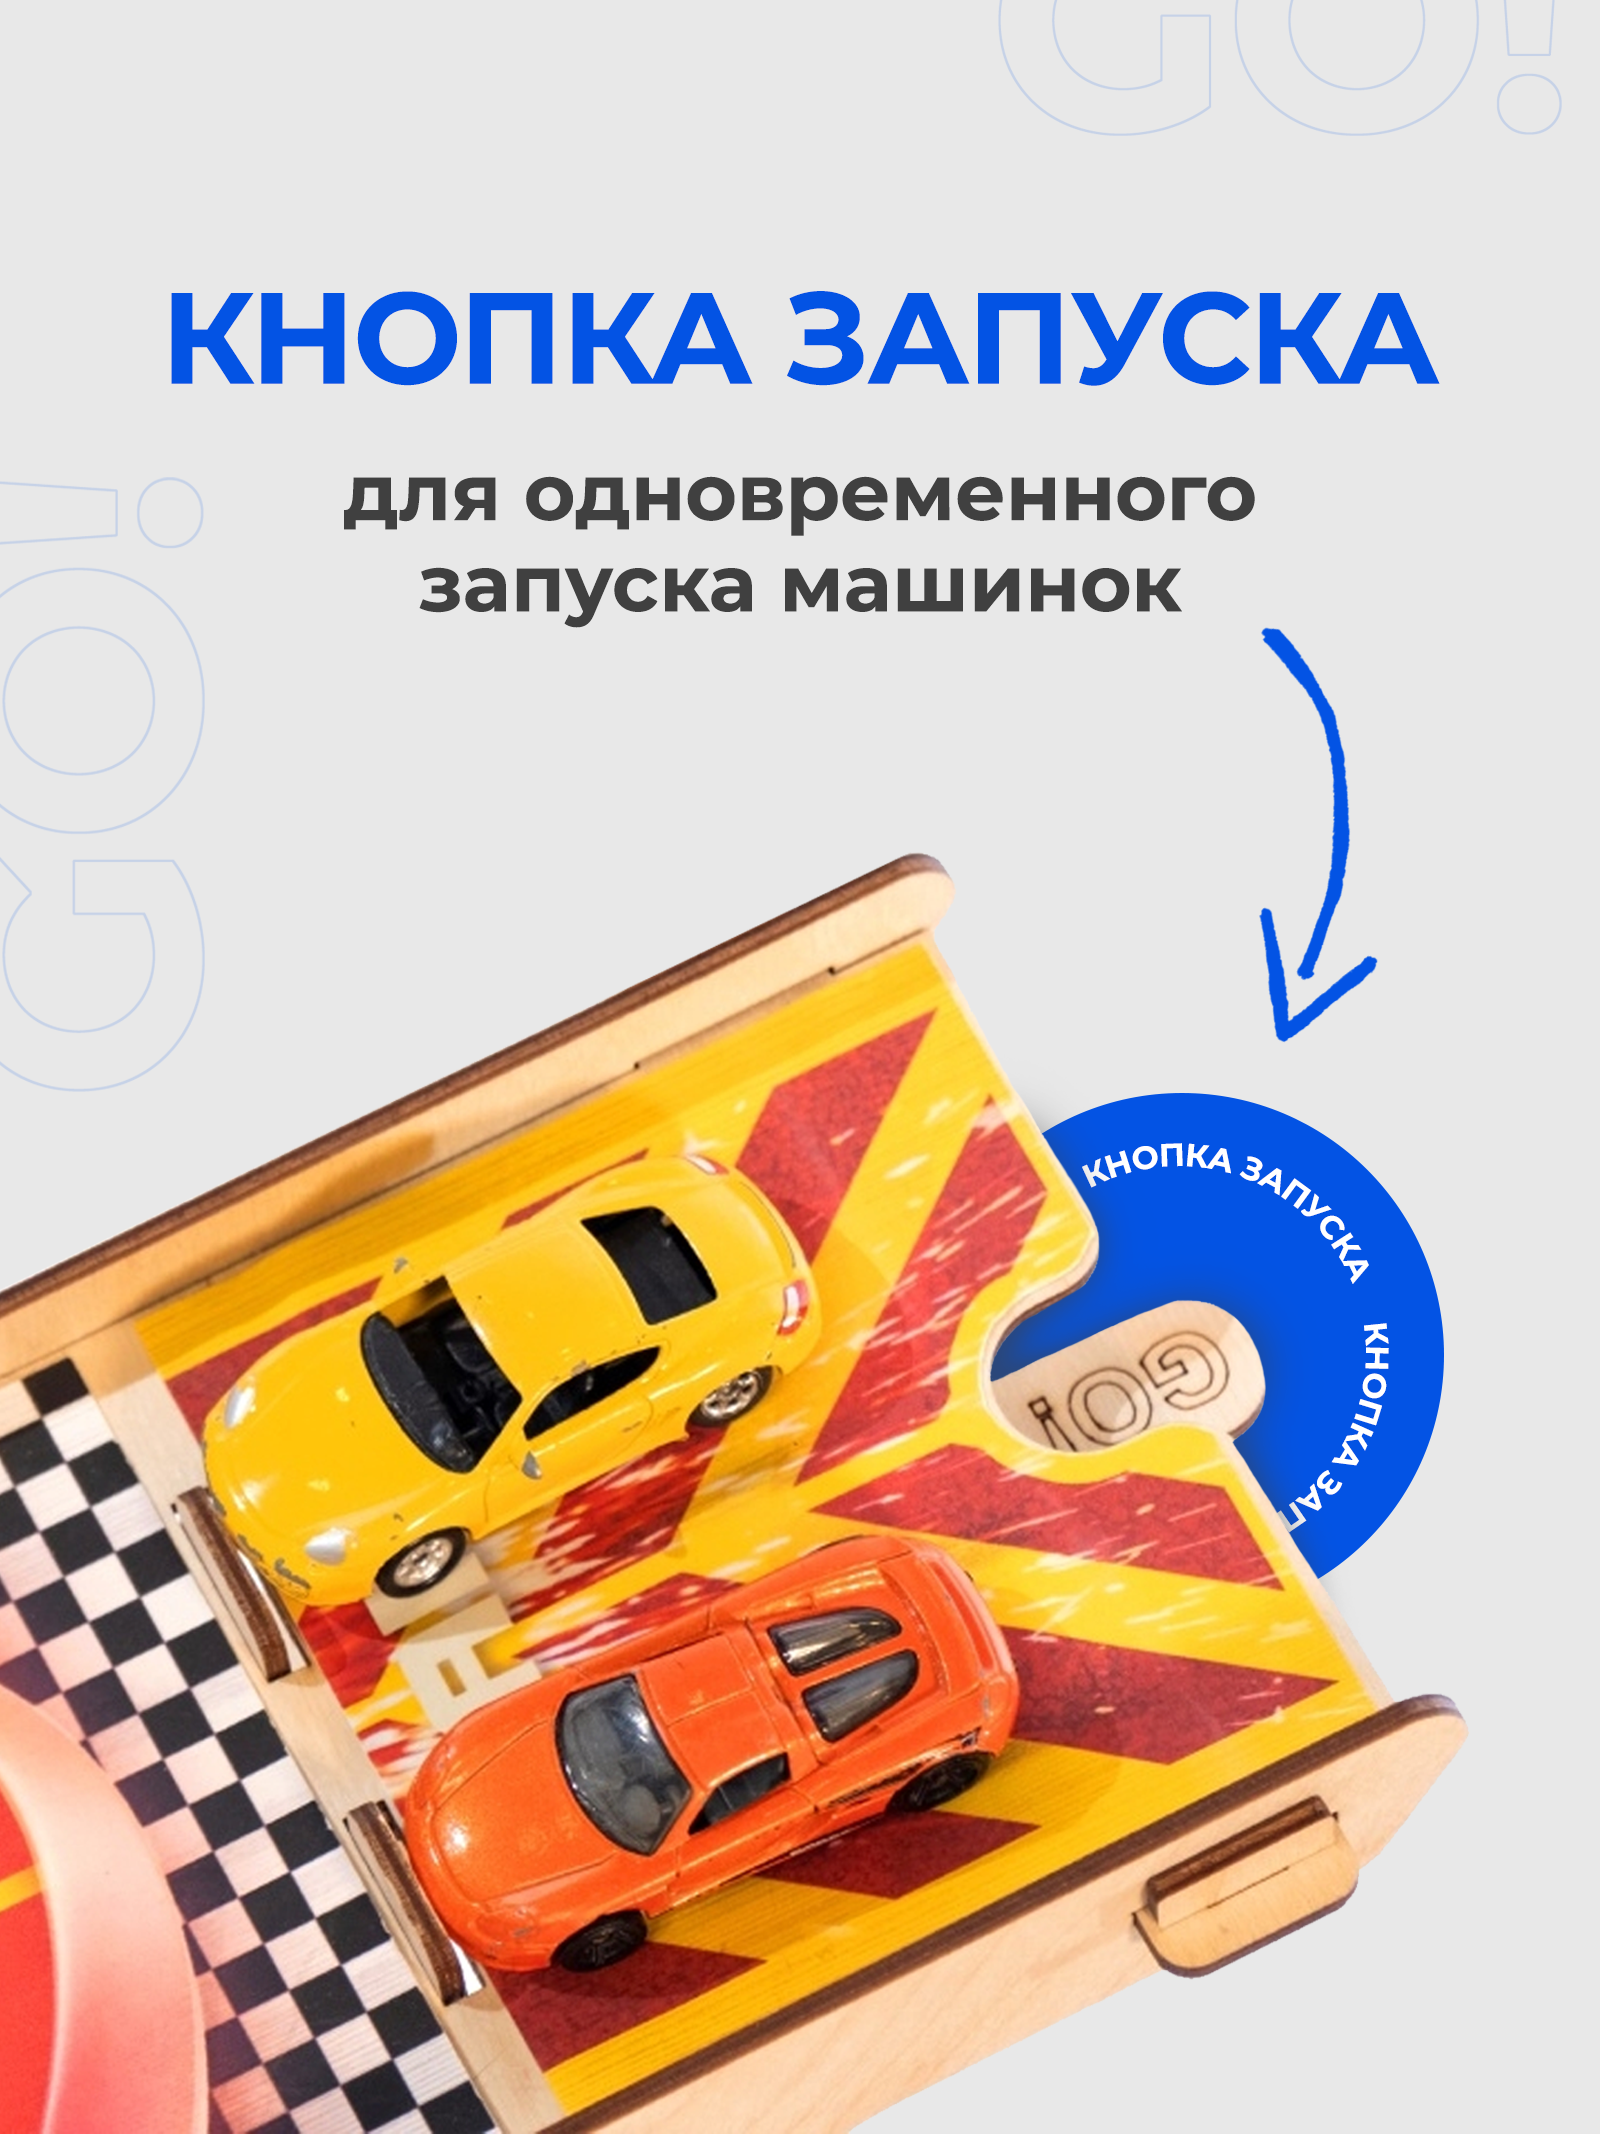 Парковка для машинок Teremtoys.ru 3139 3139 - фото 3